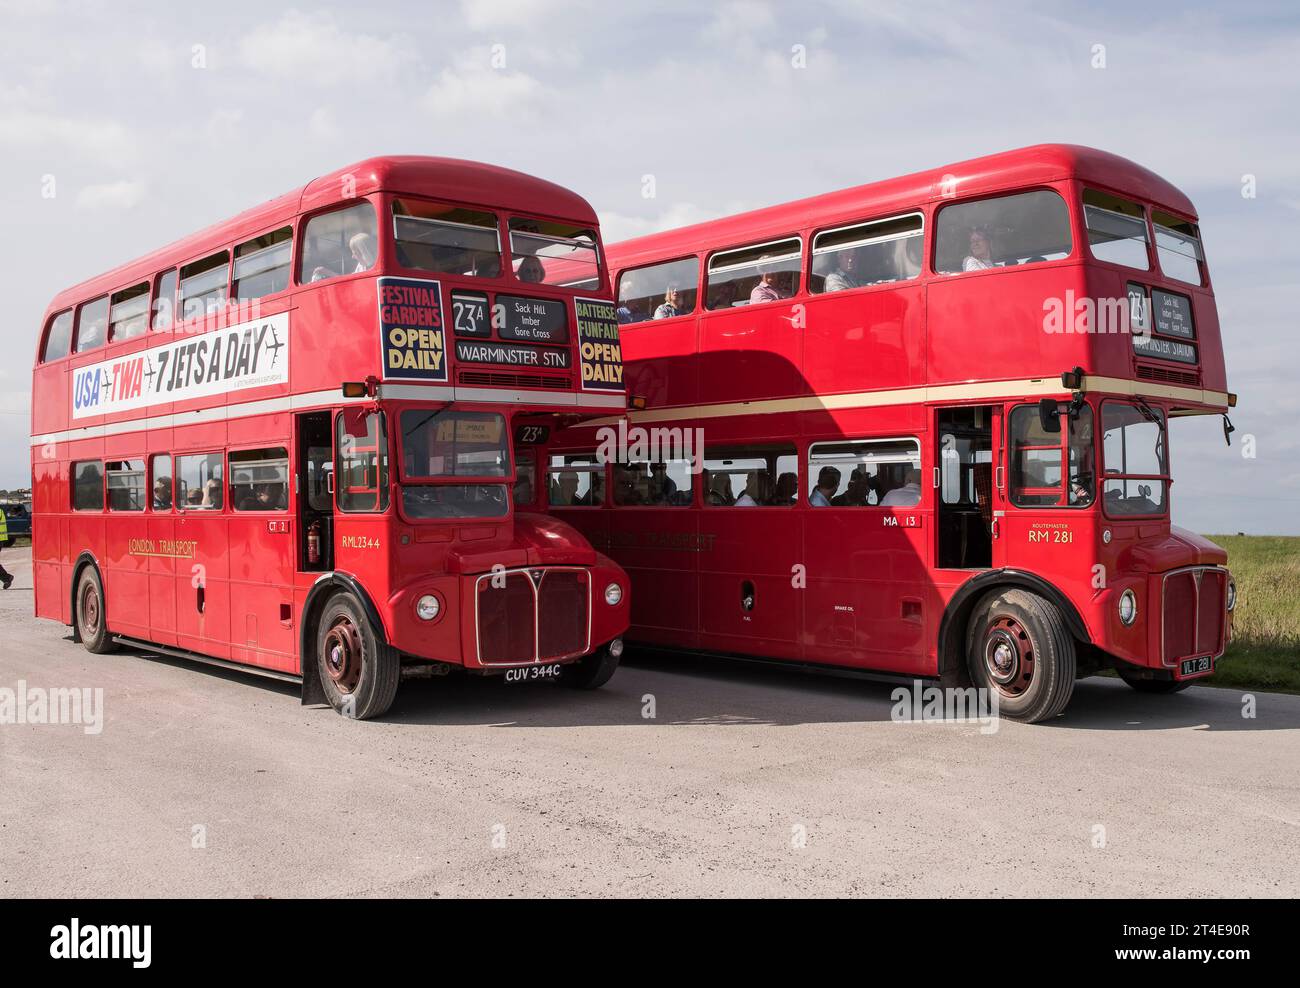 Imberbus, Londres transport routemaster bus Warminster à Imber et au-delà de 2017 jours ouvrables Wiltshire UK royaume-uni angleterre Banque D'Images